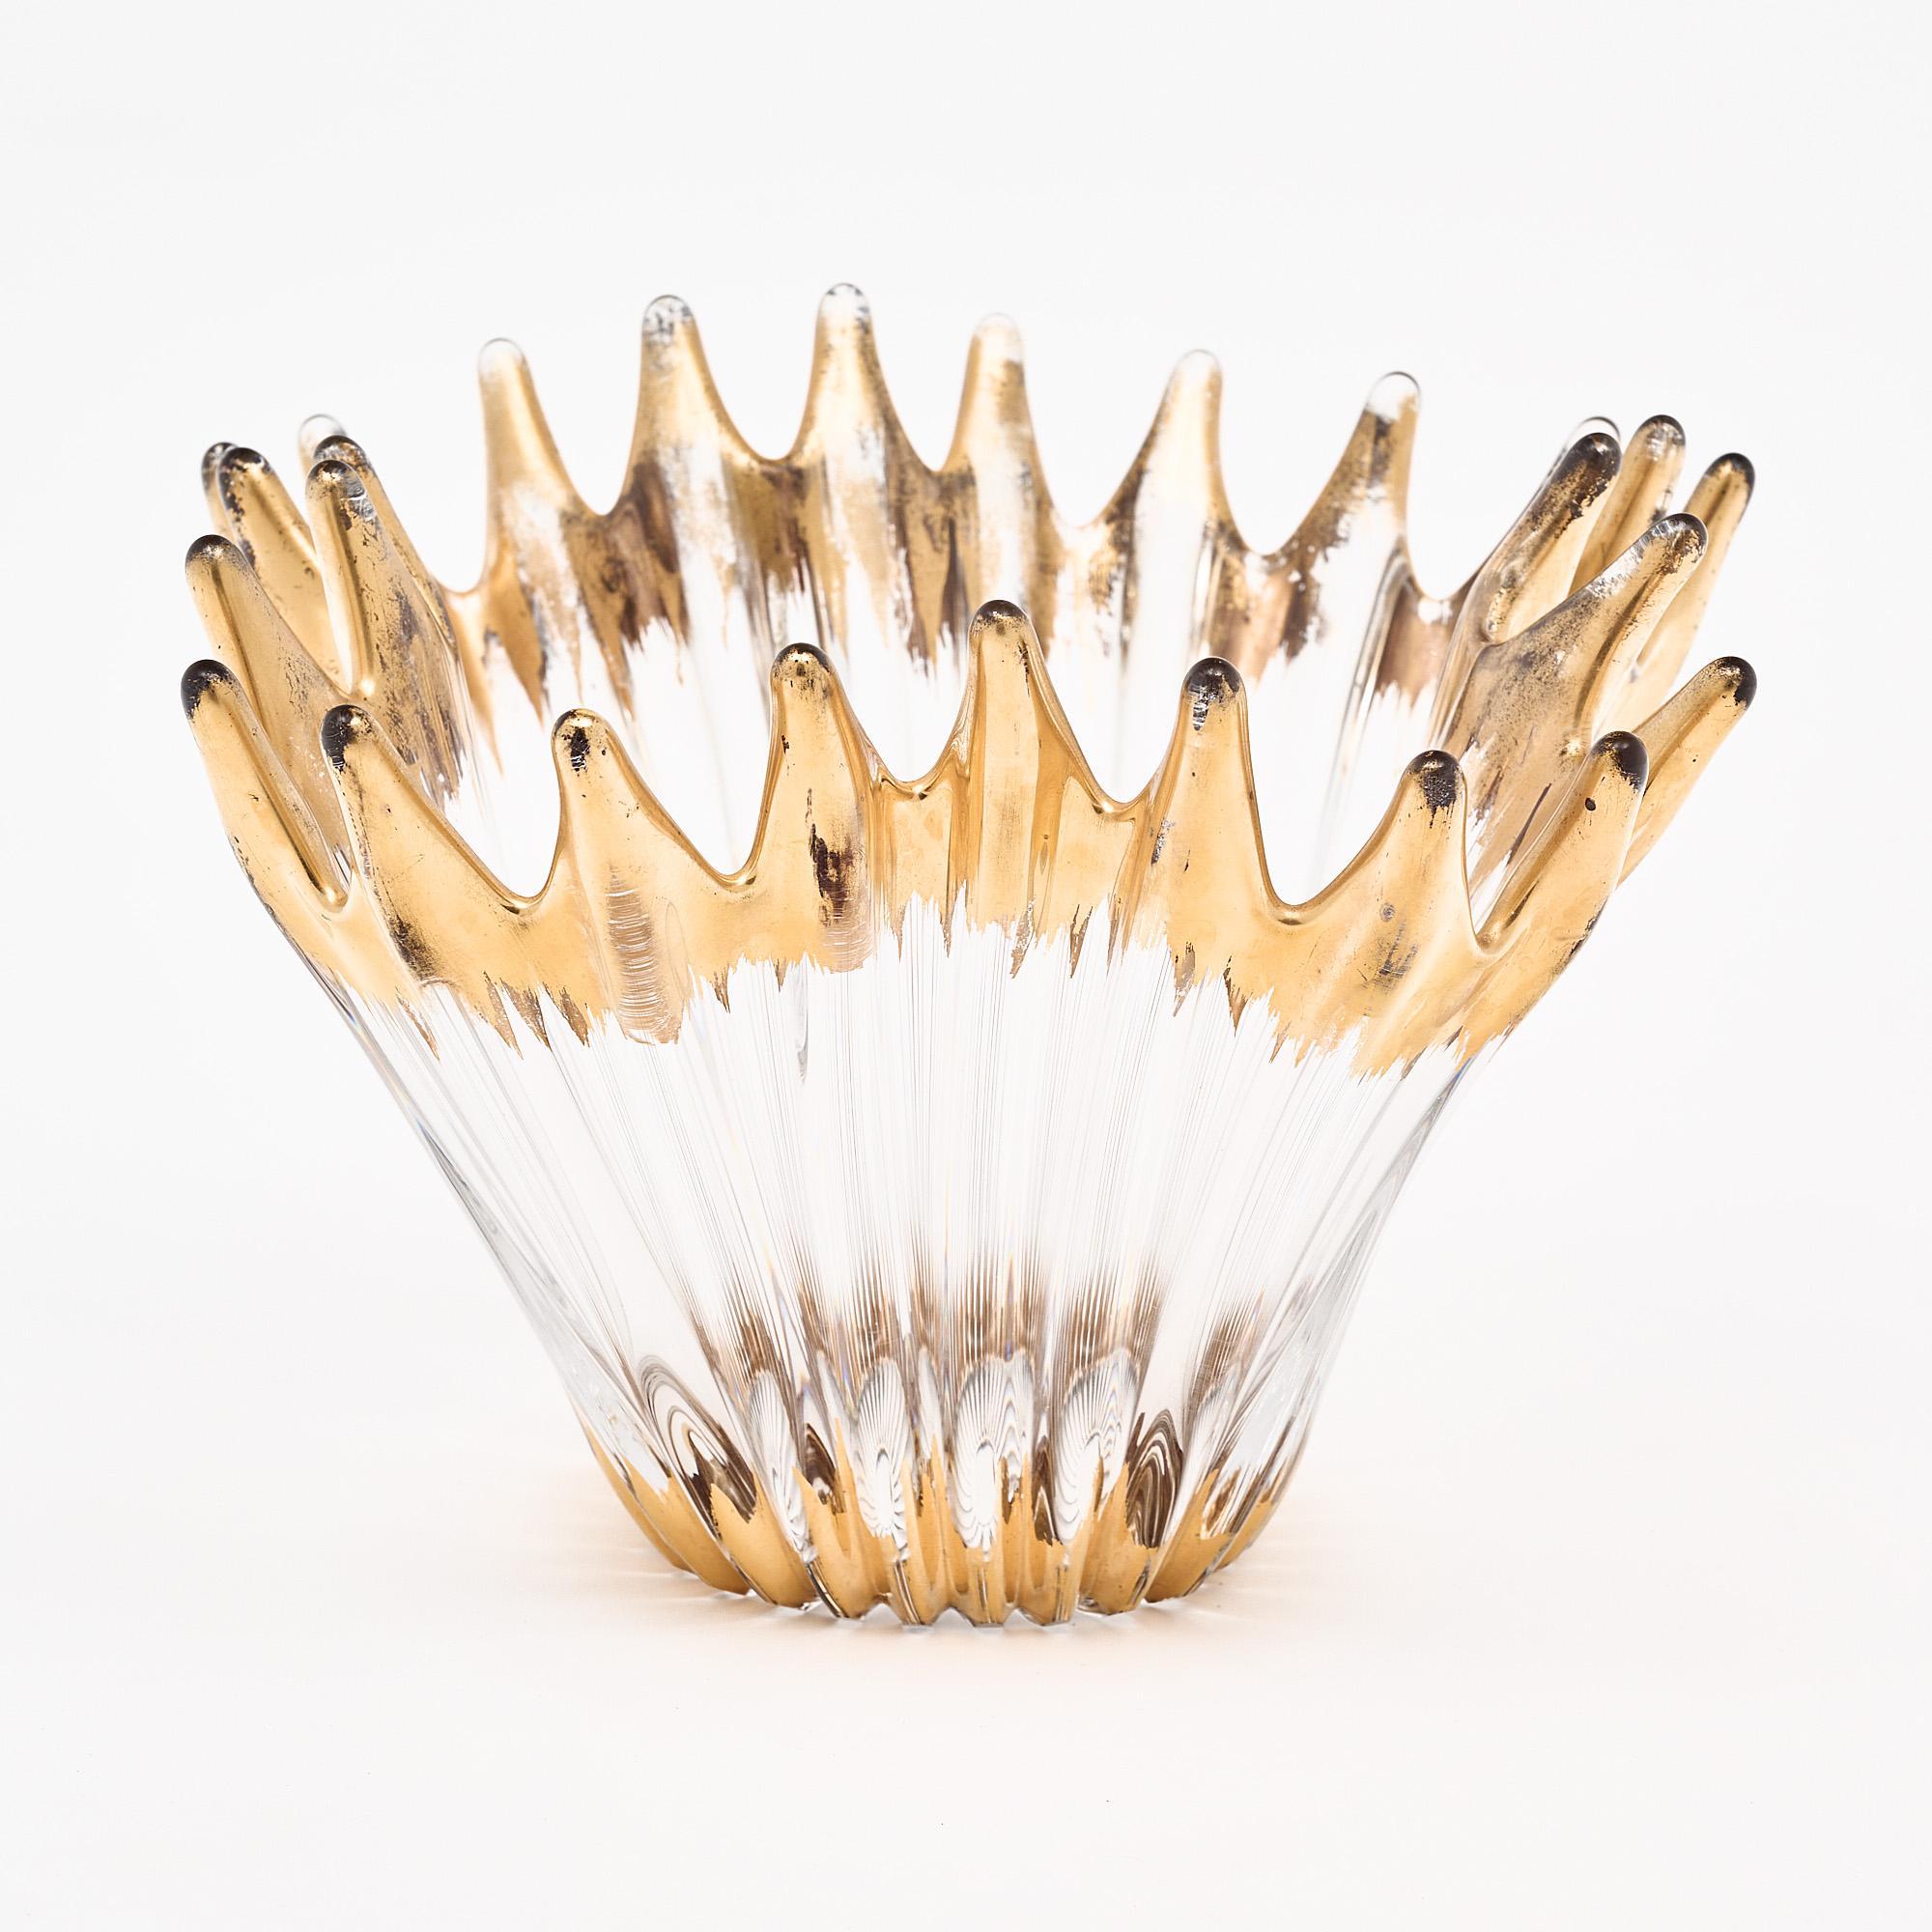 Vintage Murano glass bowl in a handkerchief style. Le verre transparent a été doré à la feuille d'or sur le bas et le haut de l'arête du verre.